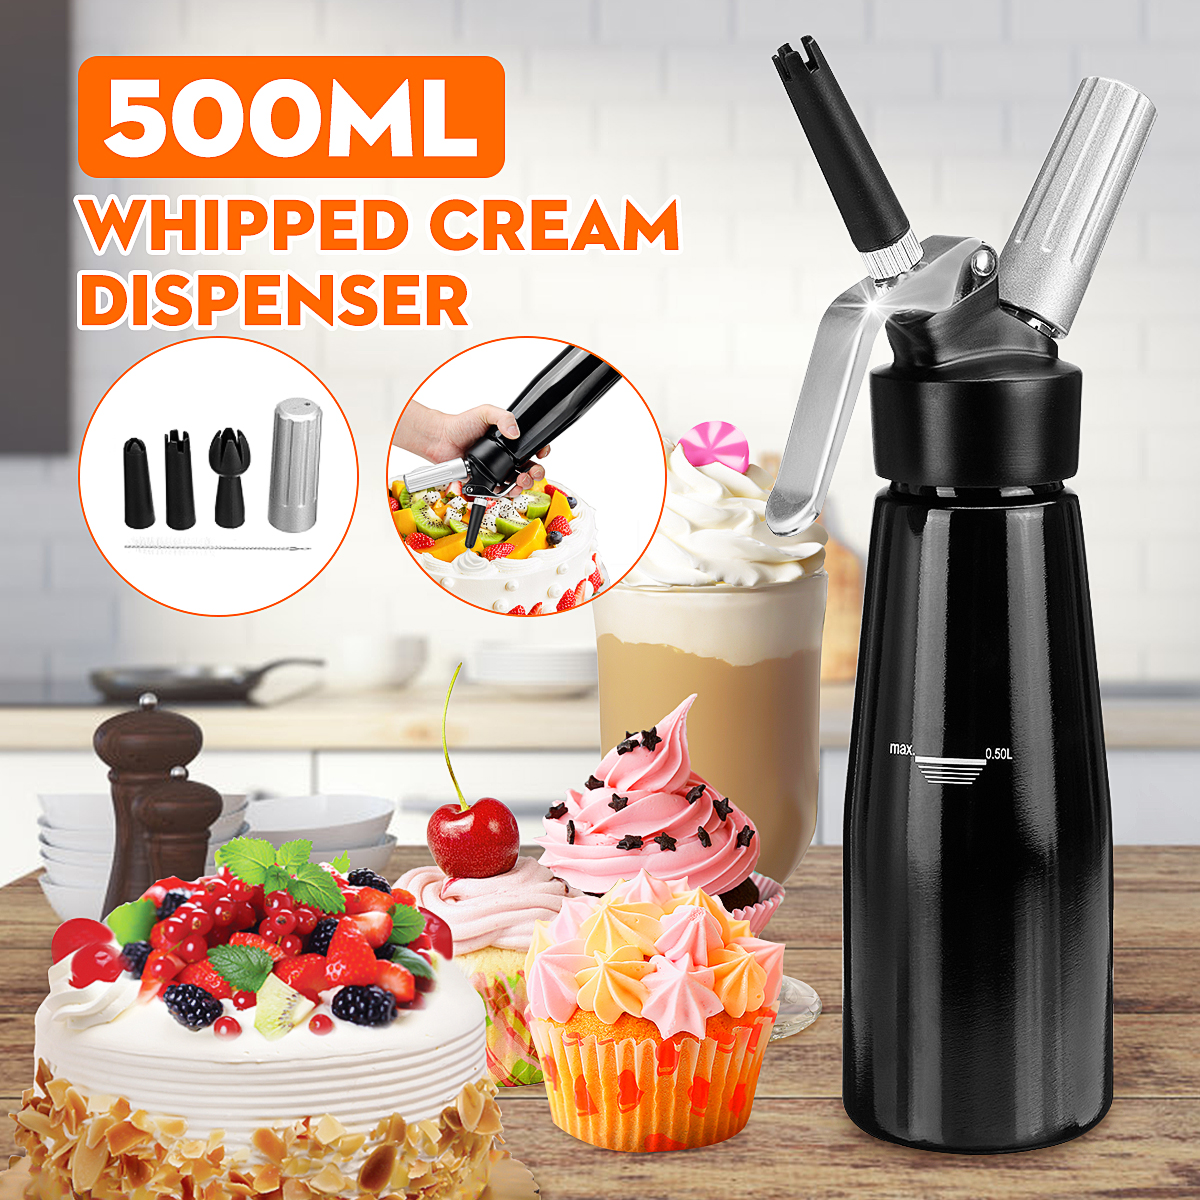 Whipped Cream Dispenser | best whipped cream dispenser | 1 quart whipped cream dispenser